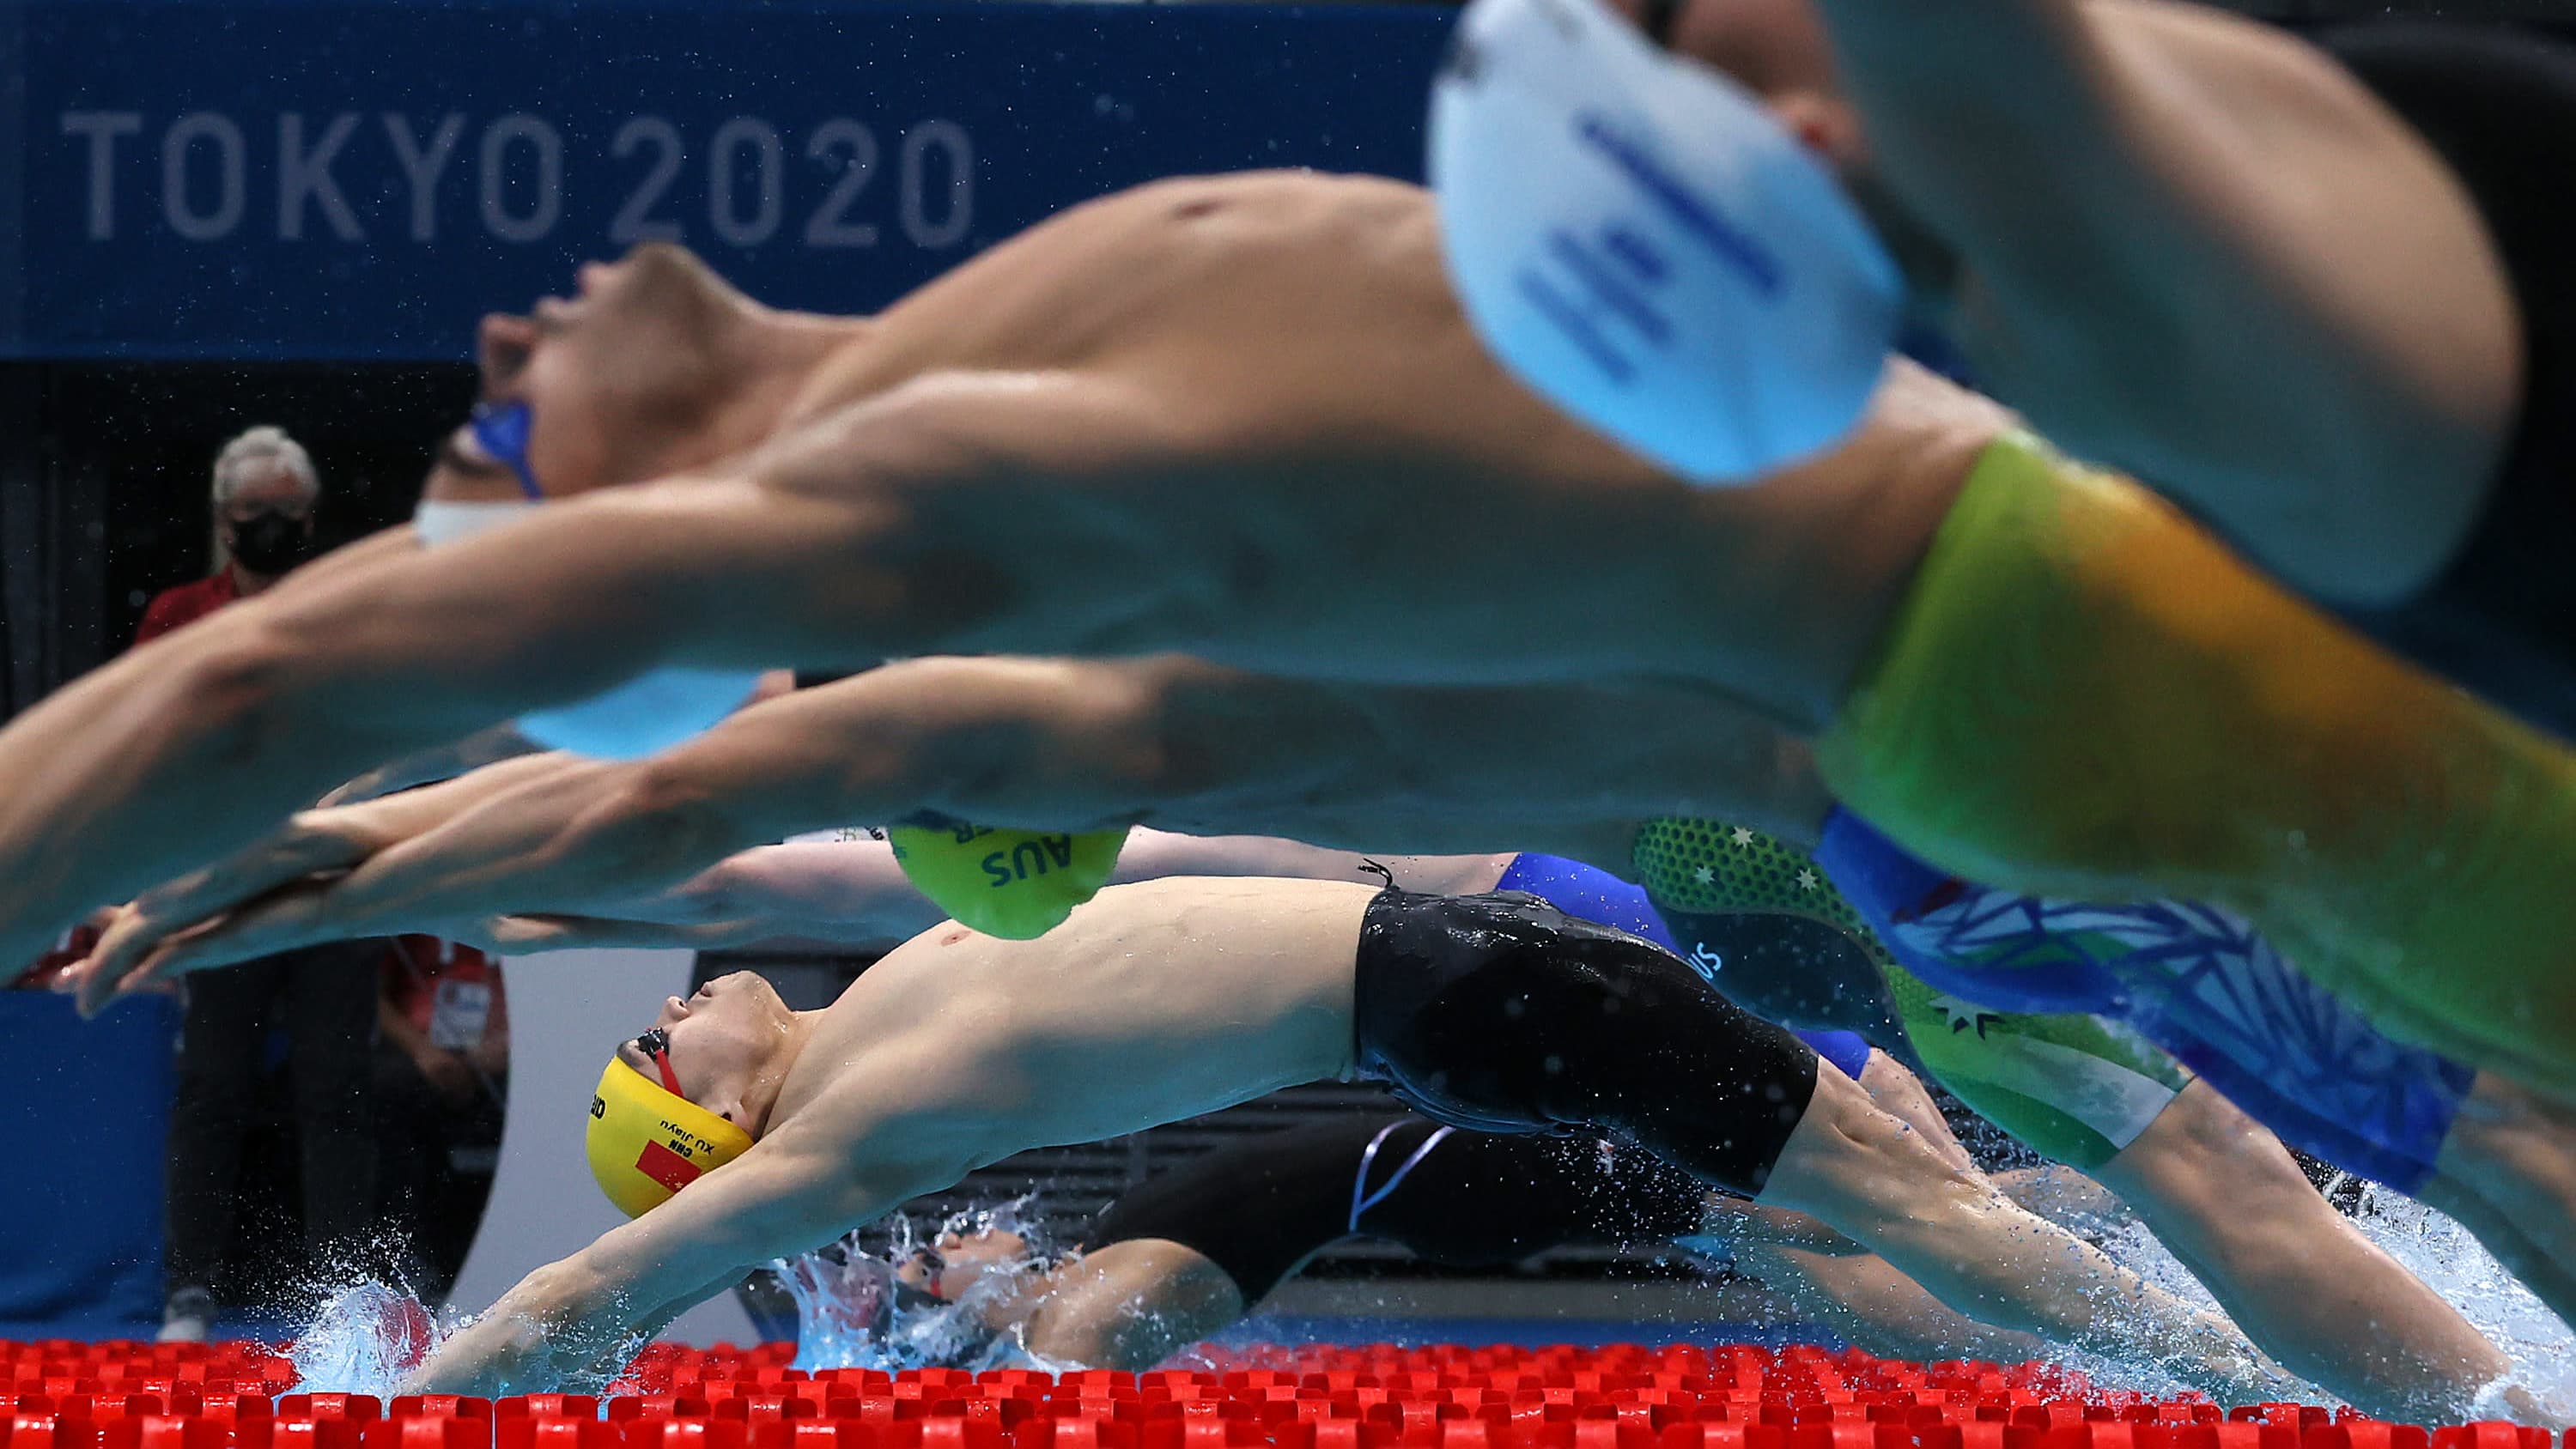 Uimareita Tokion olympialaisissa.